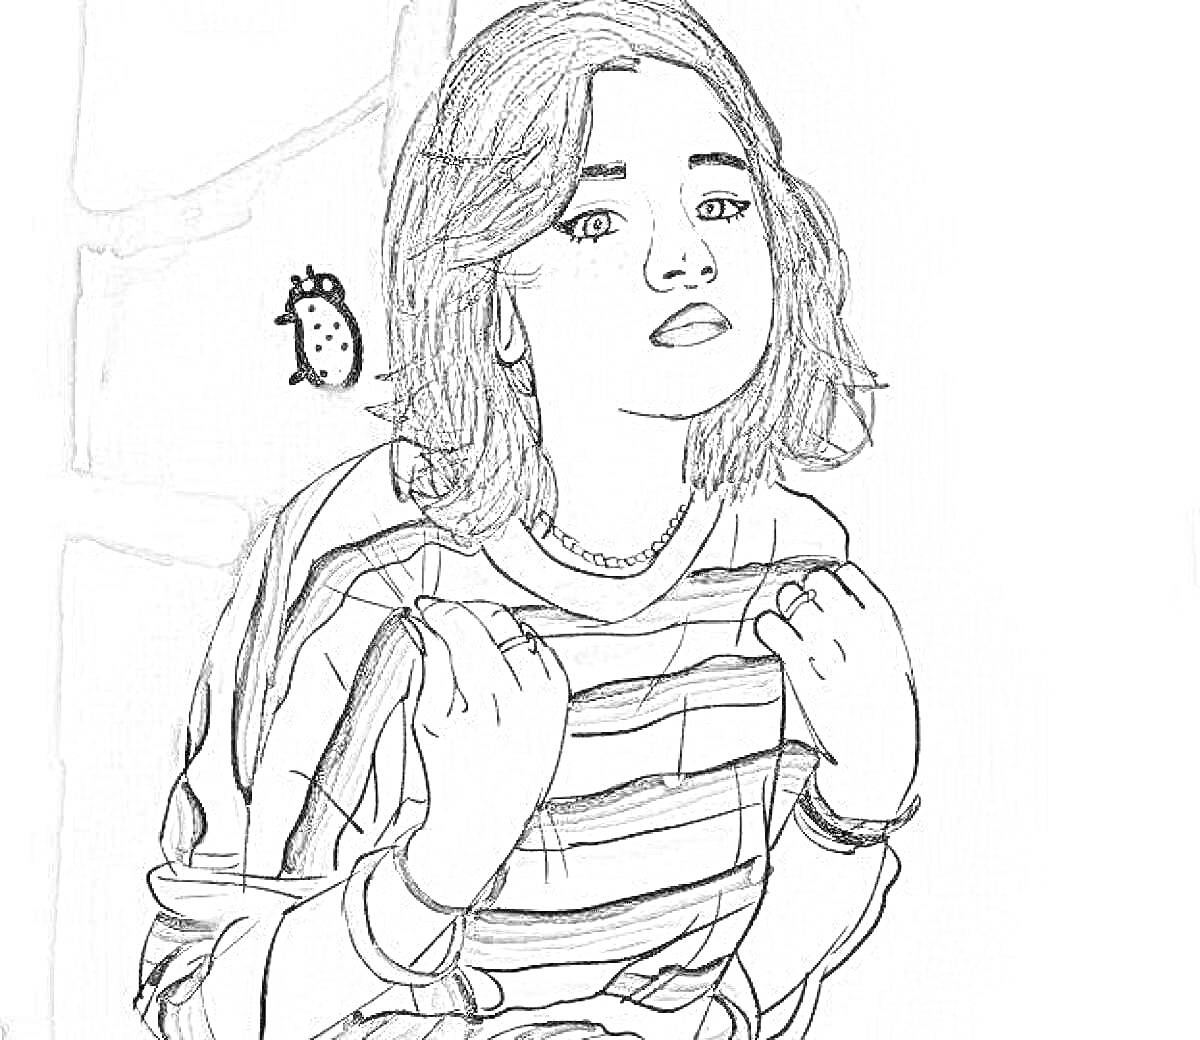 Девушка с короткими темными волосами и в полосатой кофте на фоне с рисунком жучка